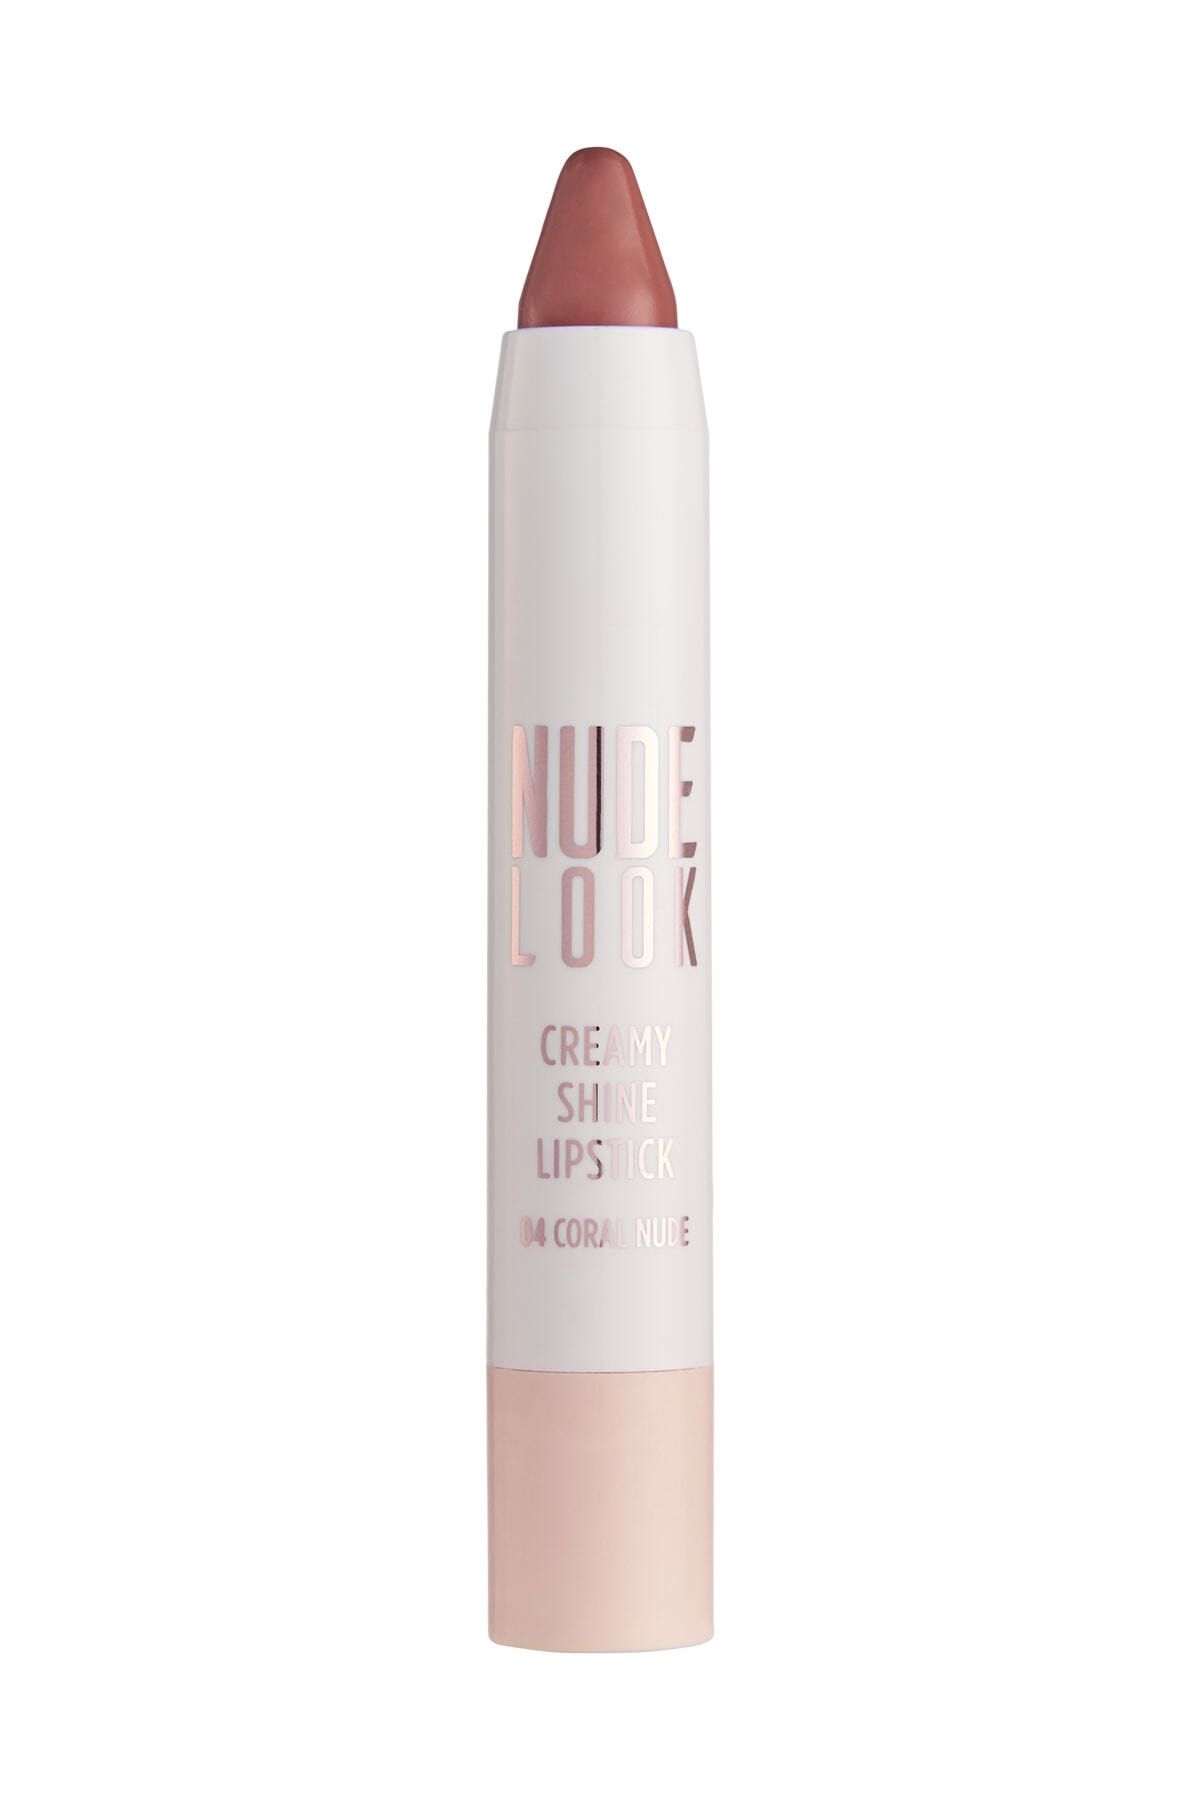 Golden Rose Kremsi Işıltılı Ruj - Nude Look Creamy Shine Lips No:04 Coral Nude 8691190967352